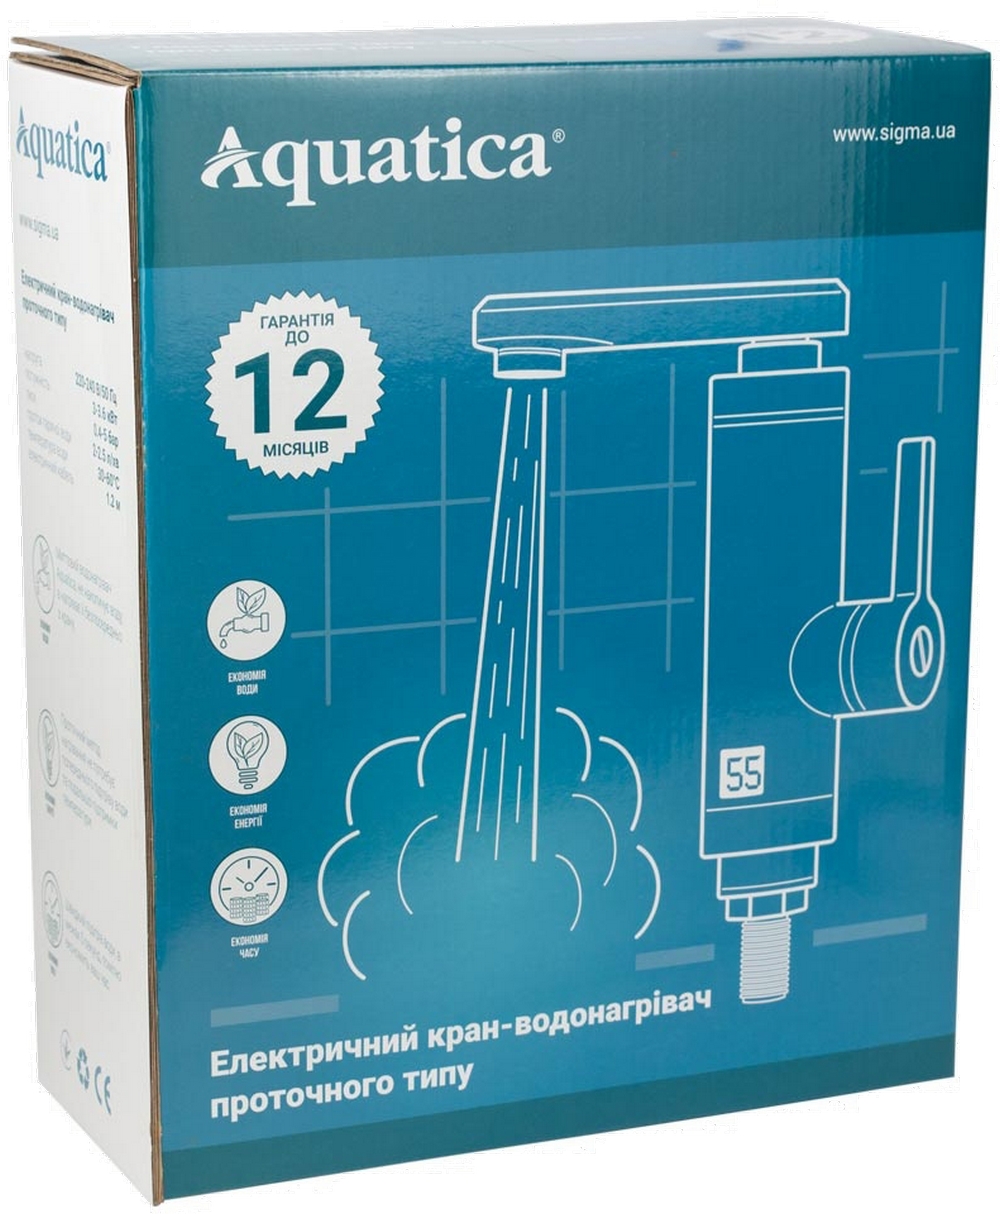 Проточный водонагреватель Aquatica JZ-6B141W цена 1195.00 грн - фотография 2